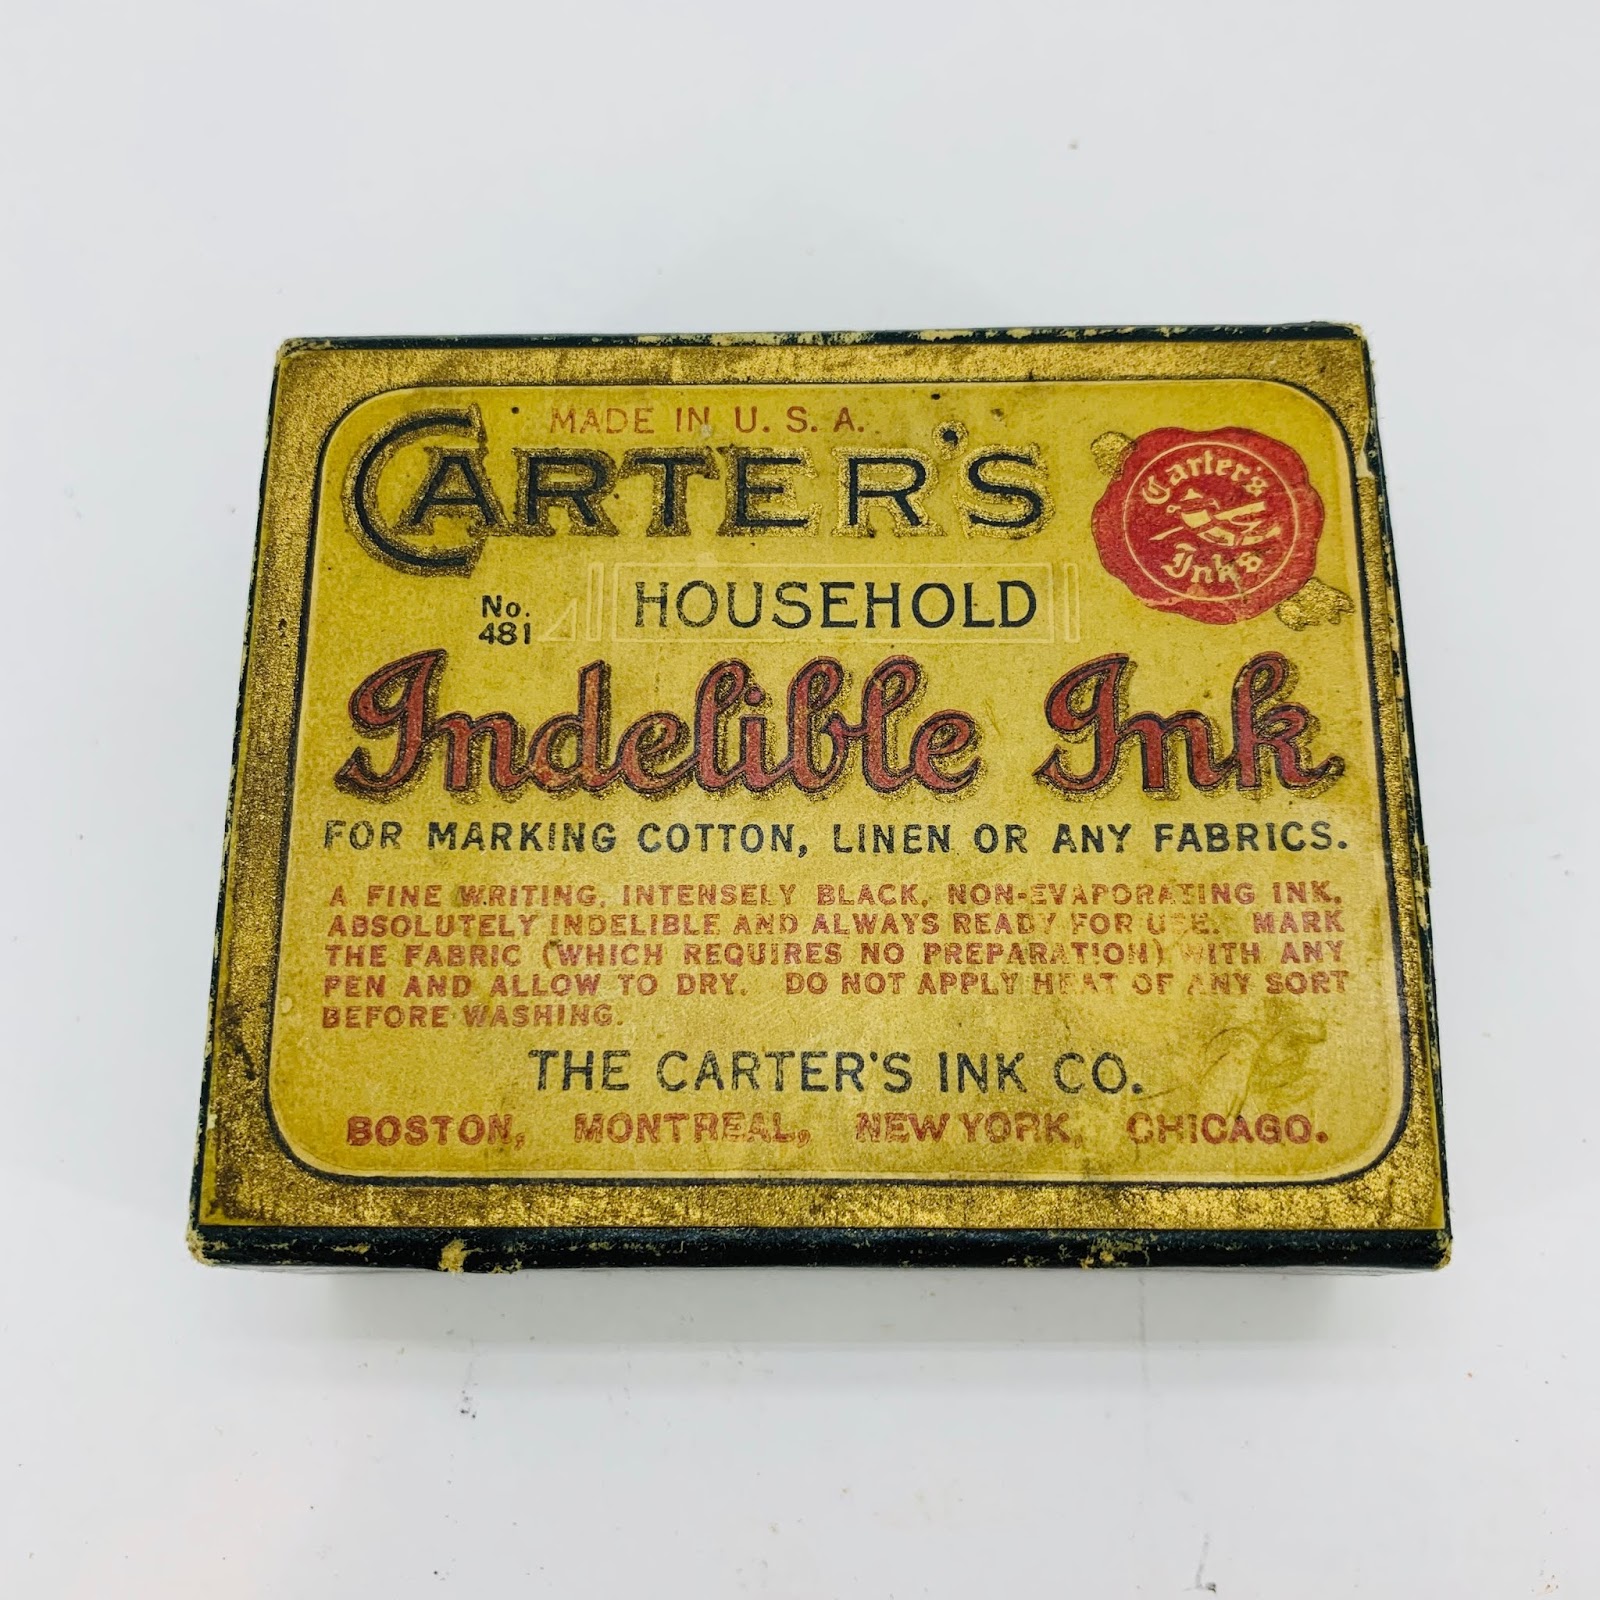 Carter's Household Indelible Ink Set - 481